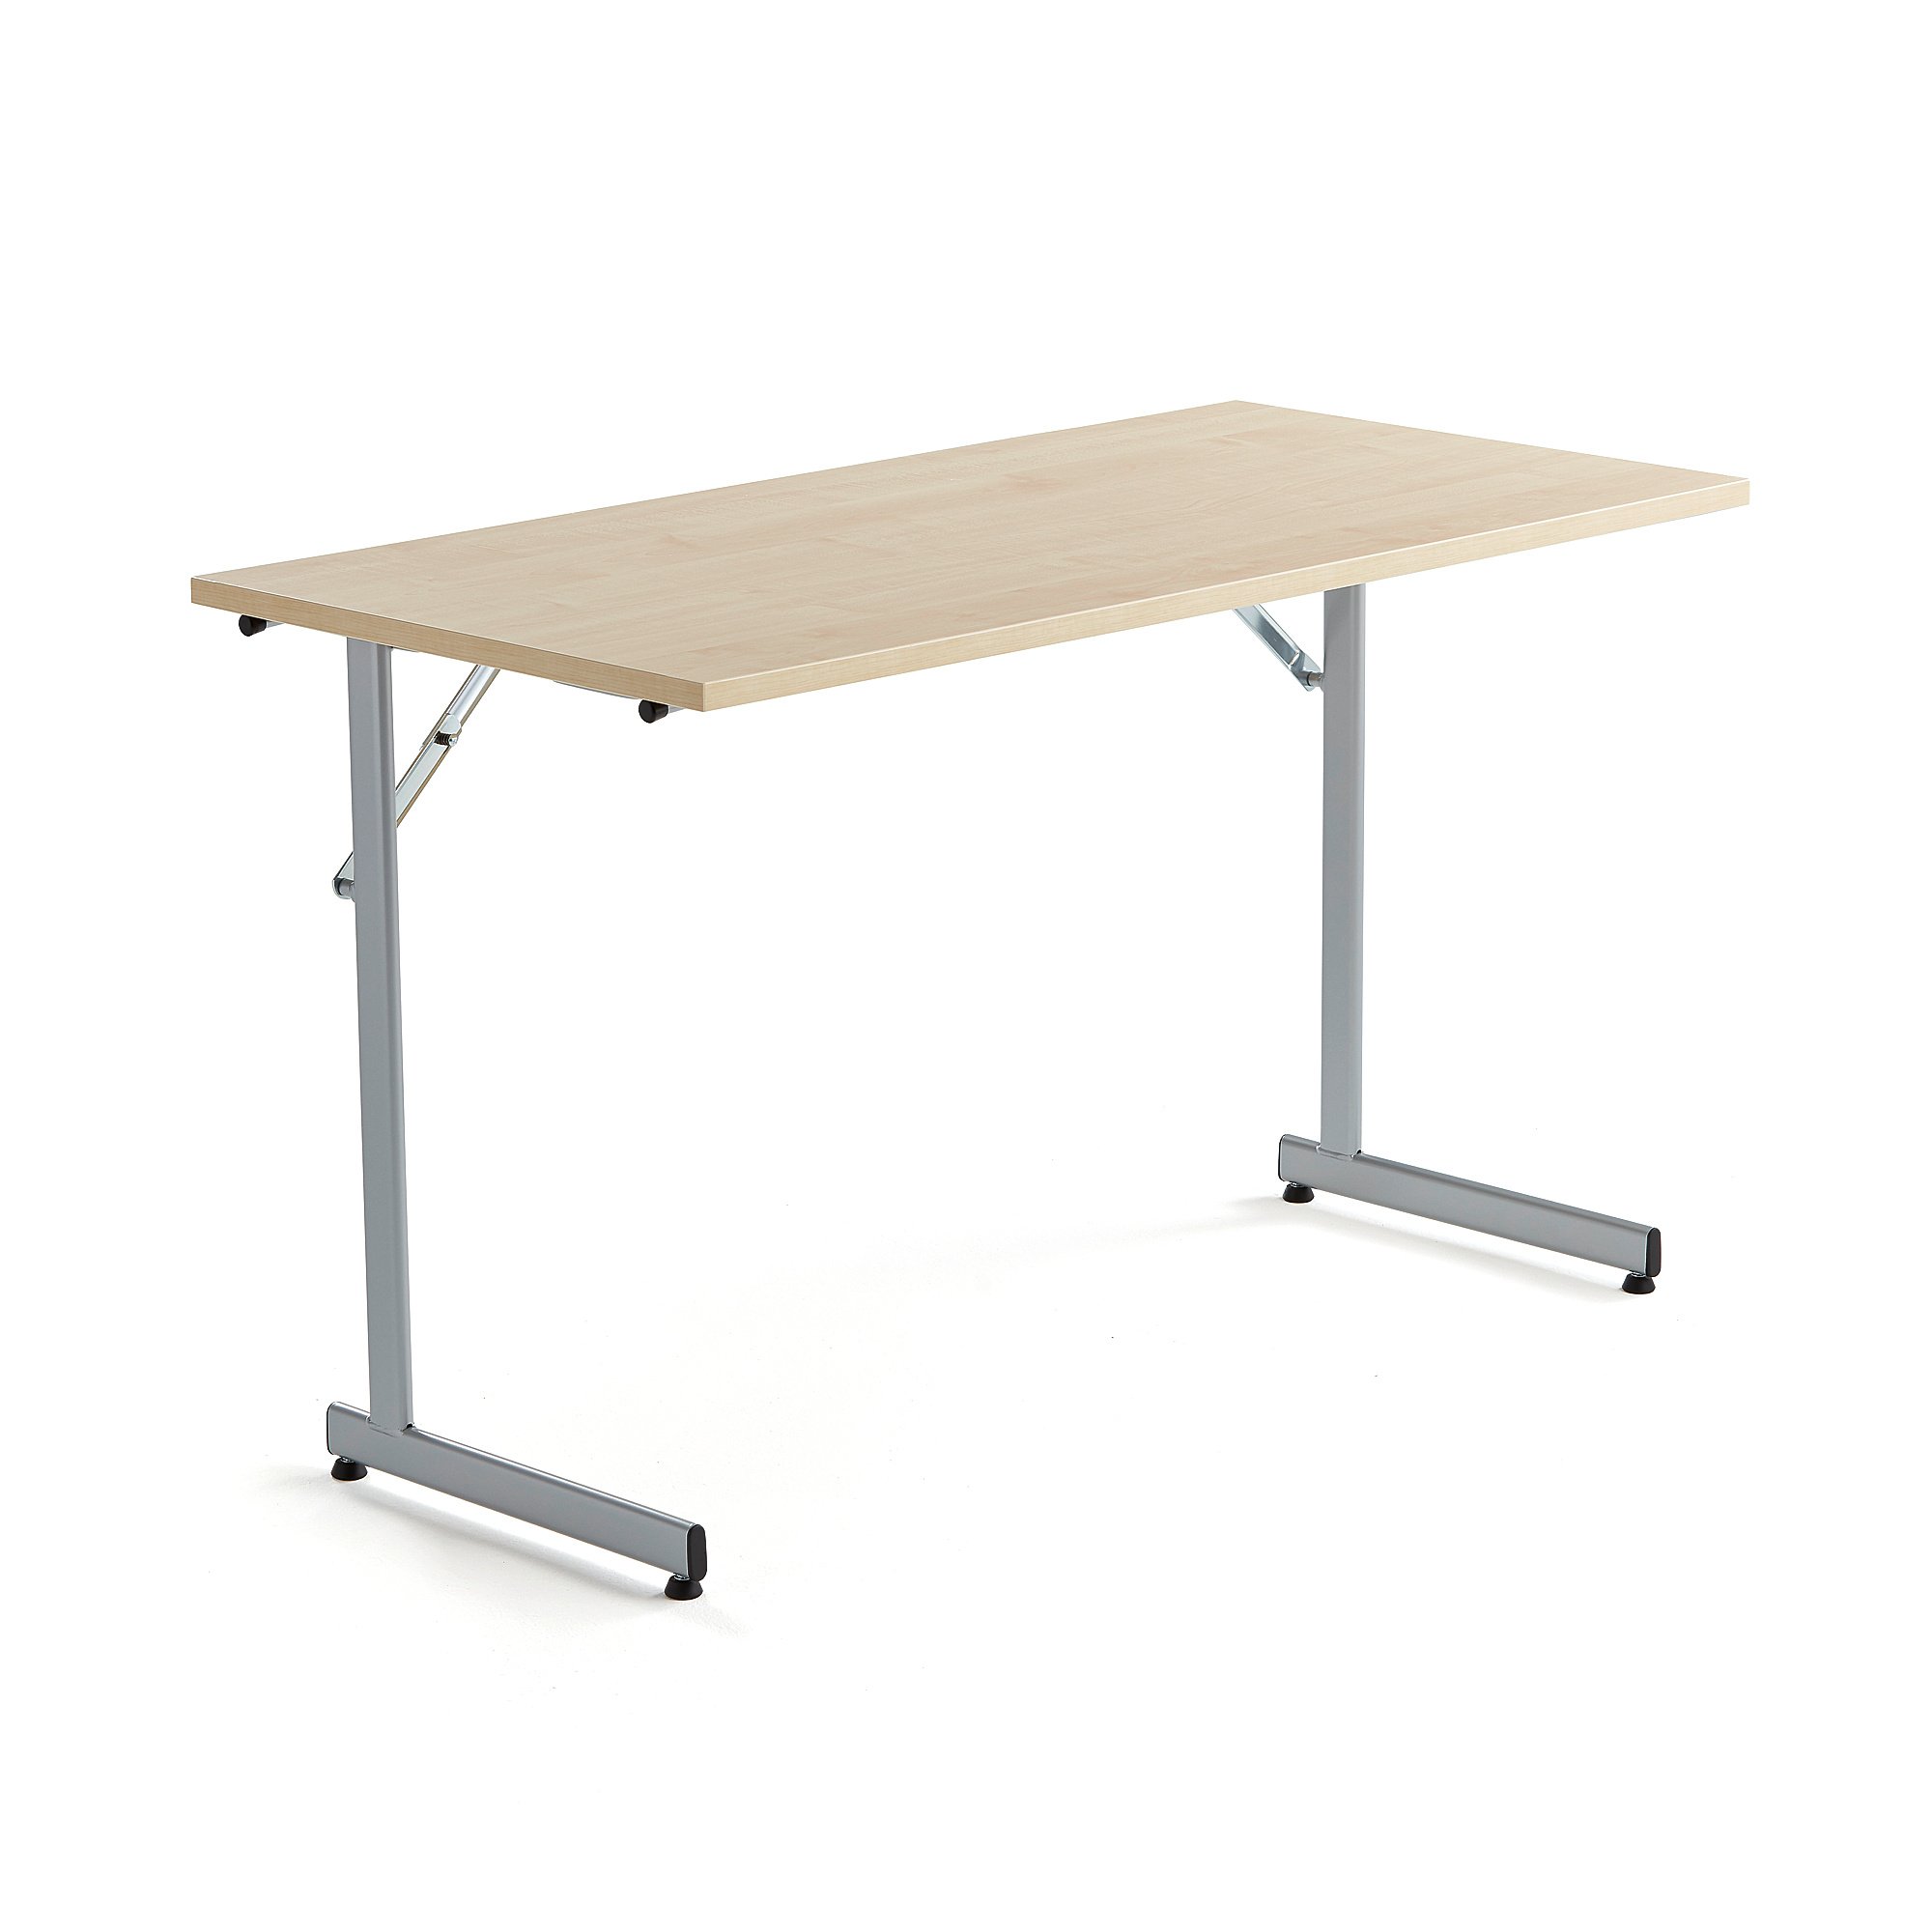 Rokovací stôl Claire, 1200x600 mm, brezový laminát/šedá